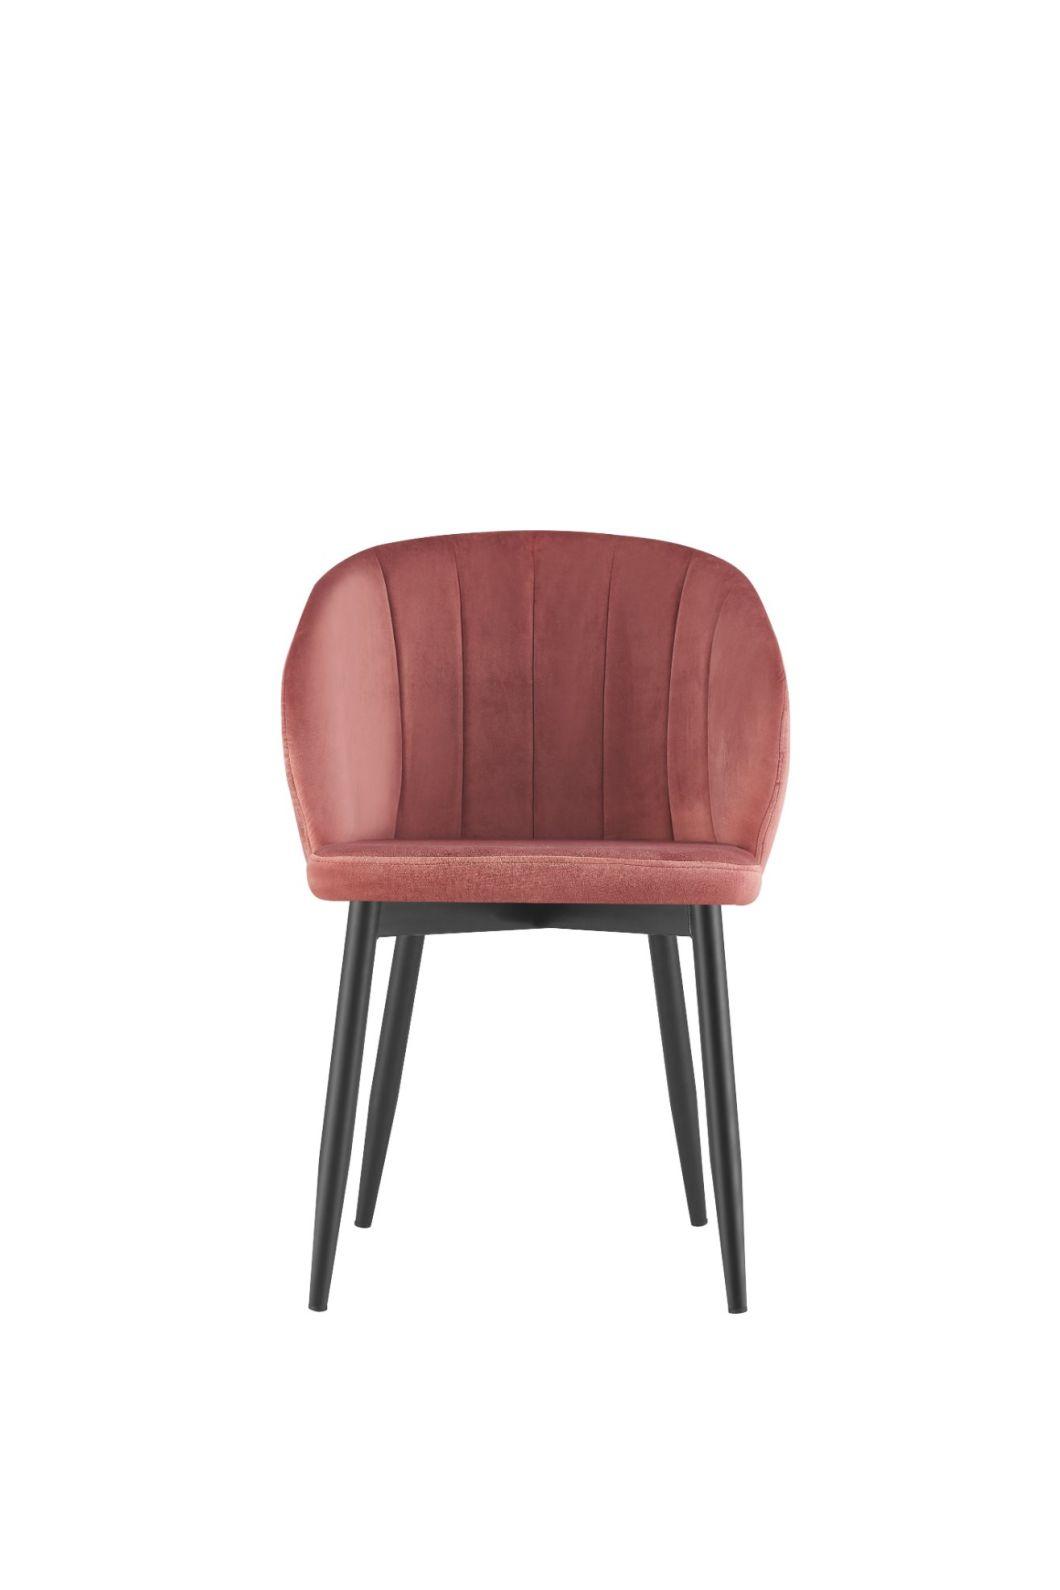 Cheap Modern Design Hotel Restaurant Furniture Velvet Metal Dining Table Chair